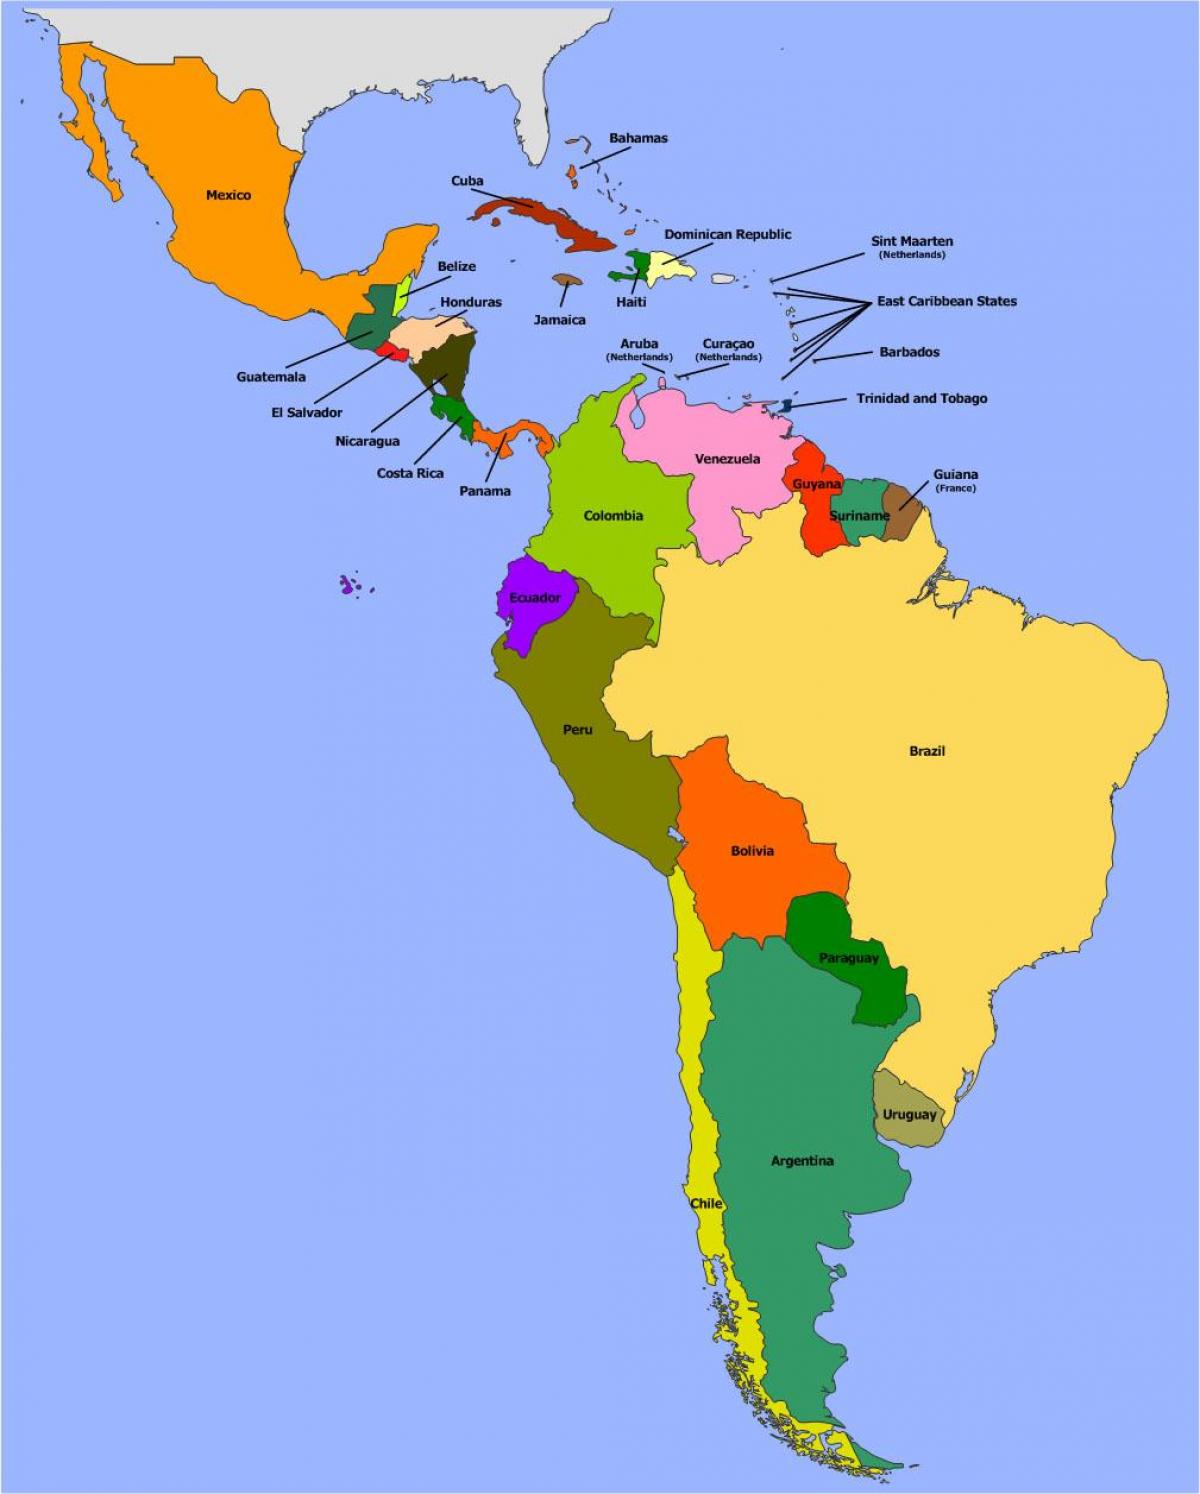 etelä ja väli amerikka kartta Belize Etela Amerikka Kartta Kartta Belize Etela Amerikkaan Keski Amerikka Amerikka etelä ja väli amerikka kartta